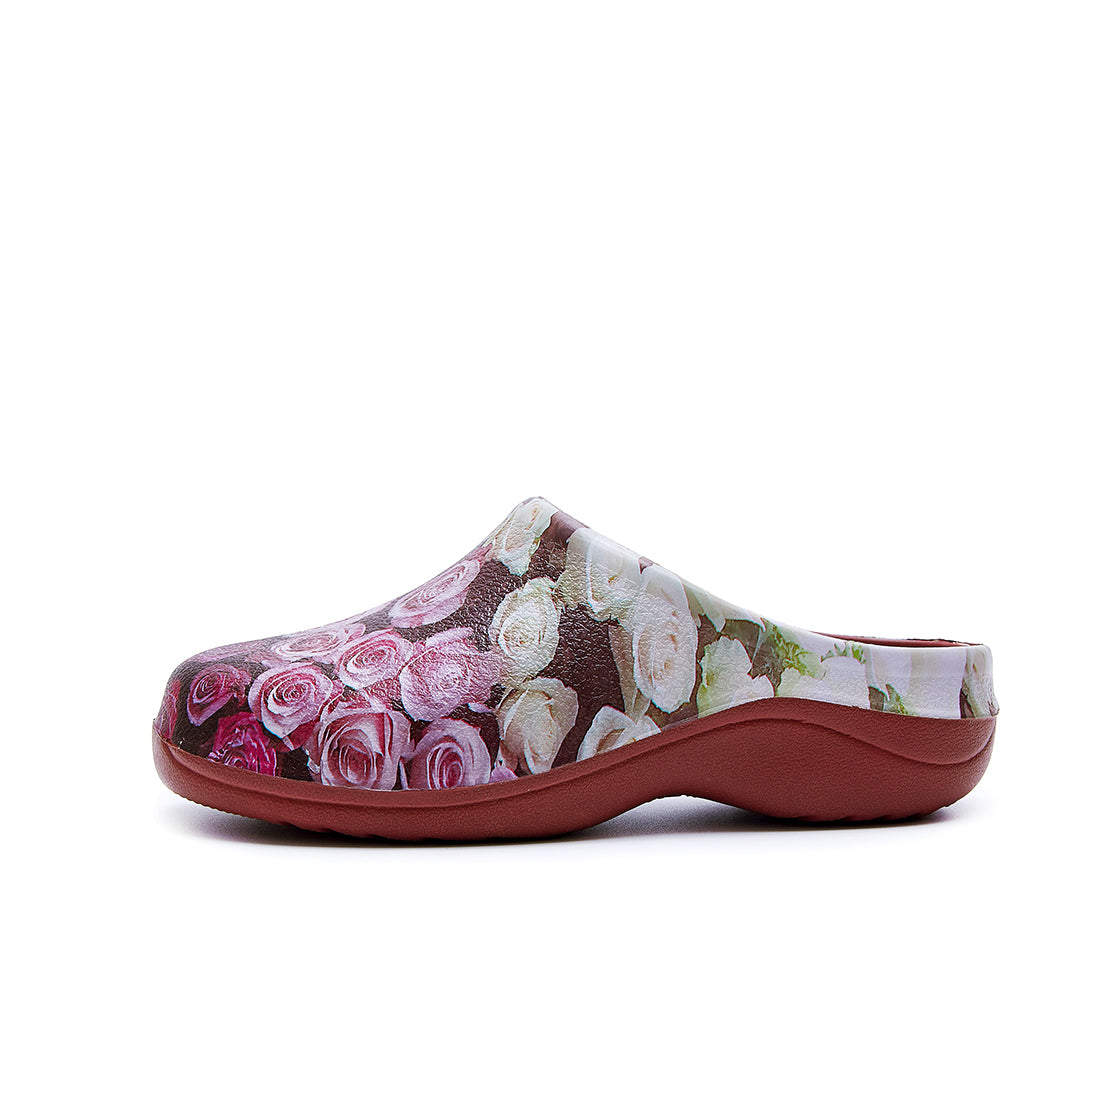 Nostalgia Rose garden clogs red sole garden shoes